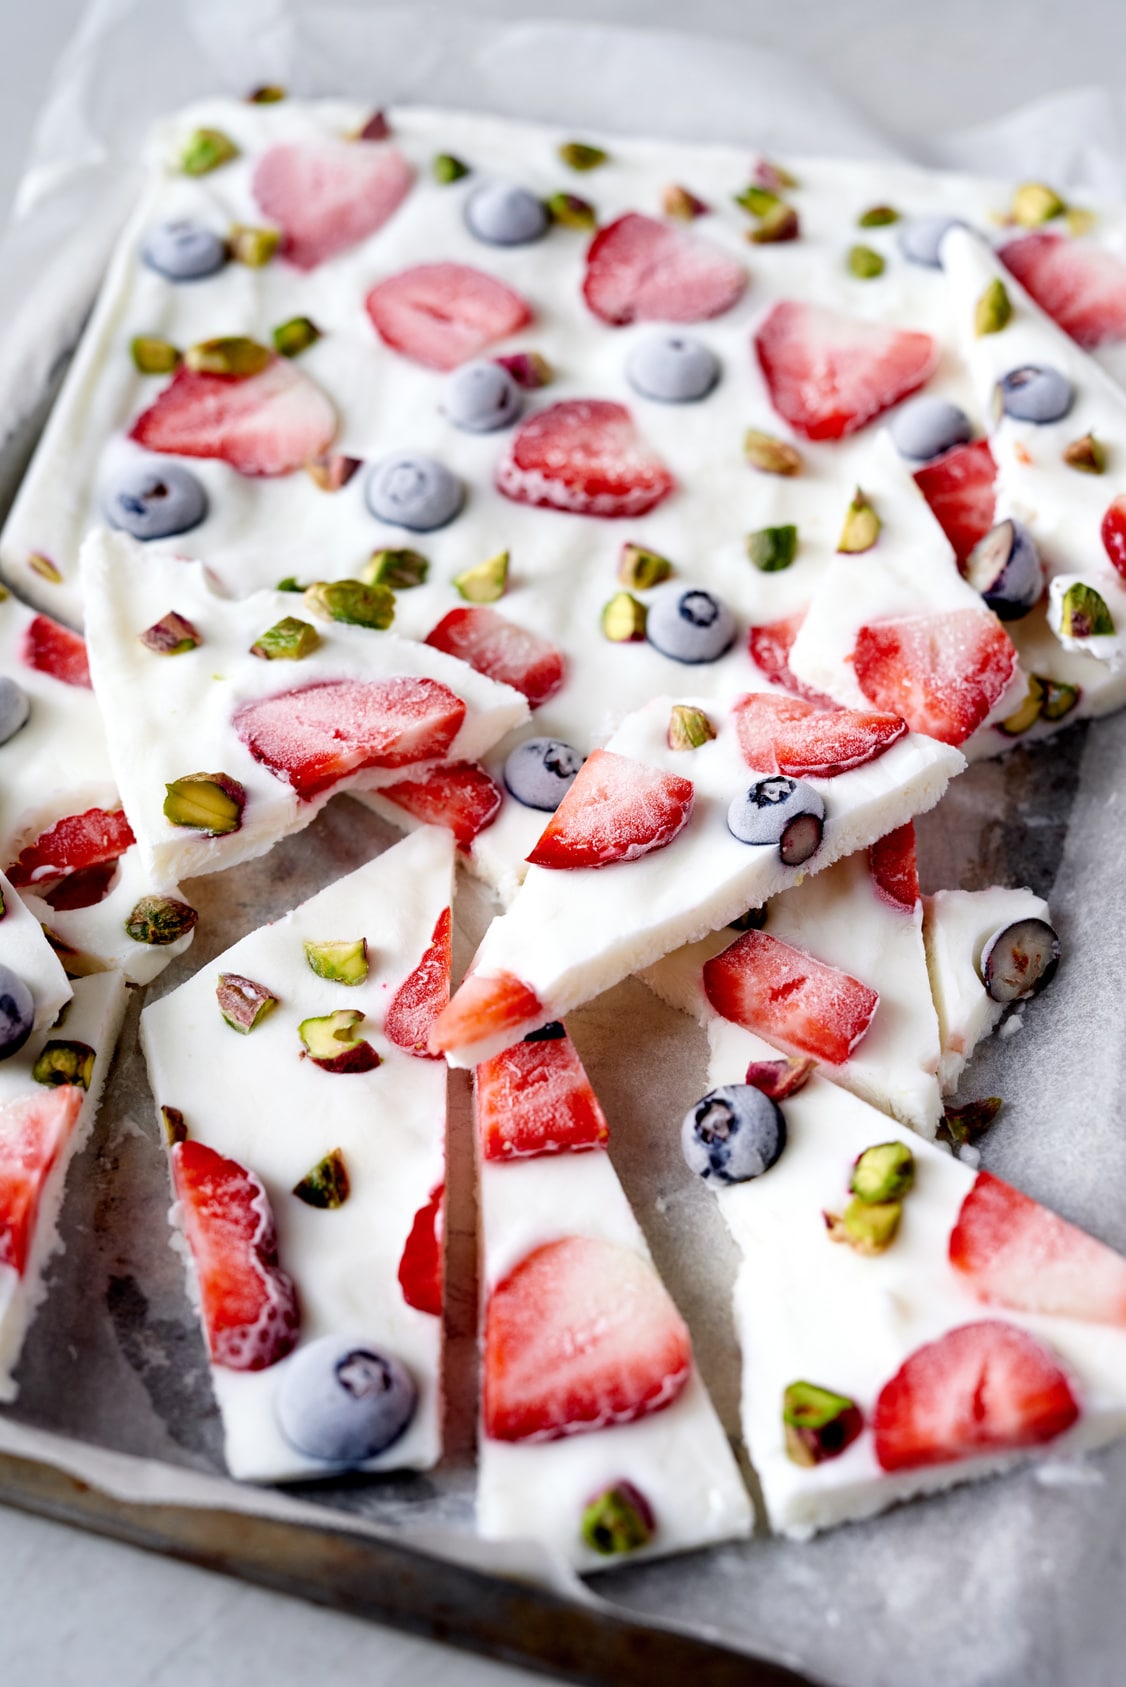 frozen yogurt bark broken into pieces with strawberries, blueberries and pistachios